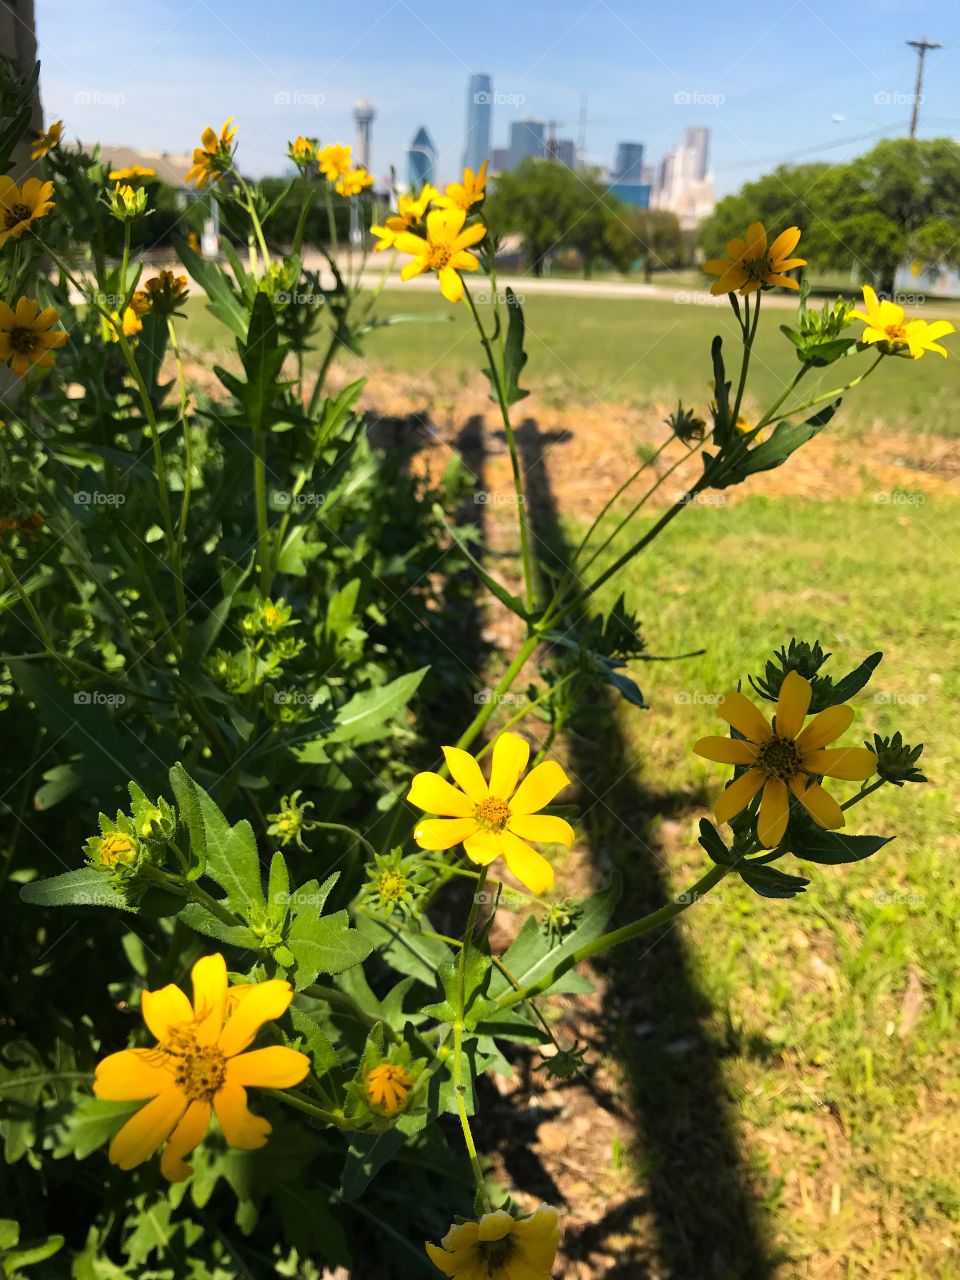 Dallas flowers